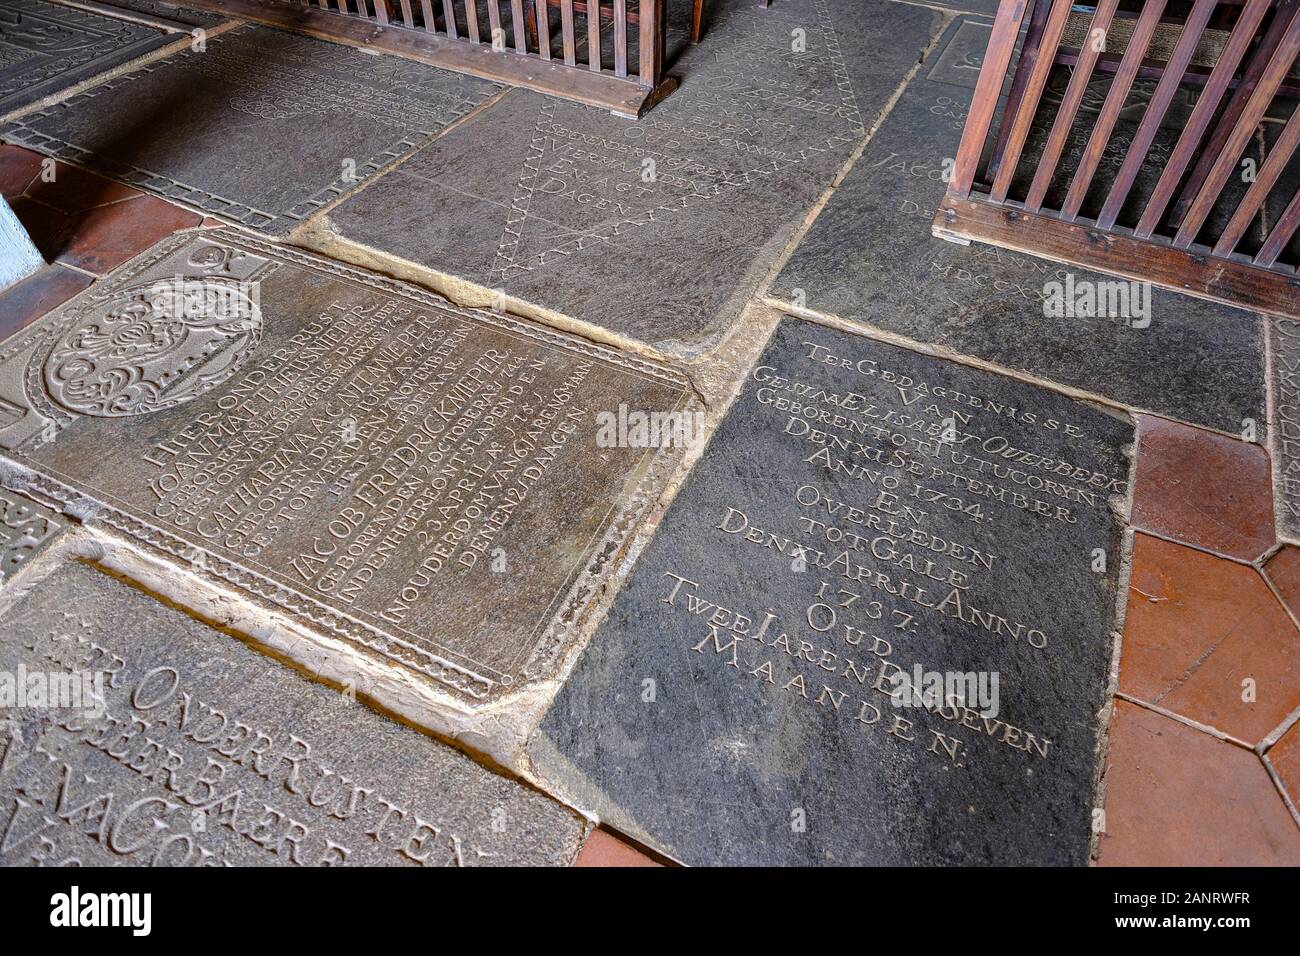 Galle, Sri Lanka - Januar 2020: Der Boden der Niederländisch-reformierten Kirche mit Grabsteinen alter niederländischer Friedhöfe im Galle-Fort am 14. Januar 2020 Stockfoto